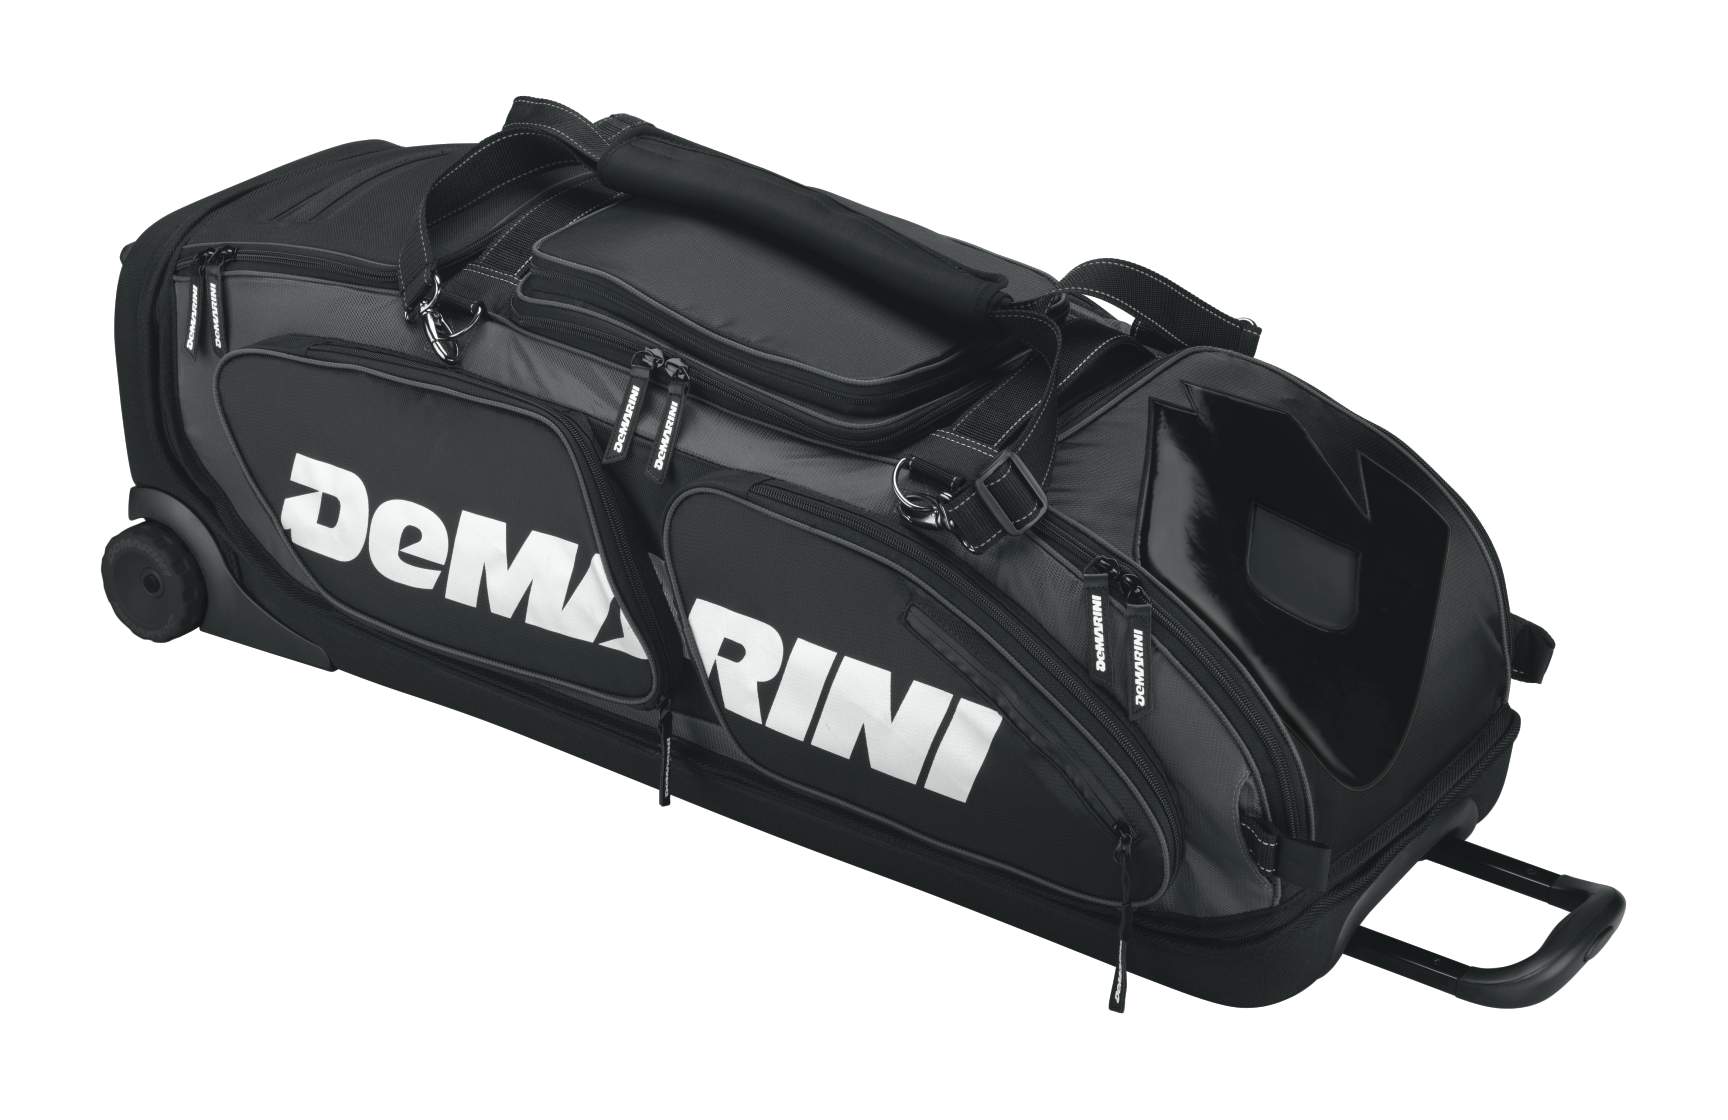 DeMARINI-Black-ops-wheeled-bag.jpg